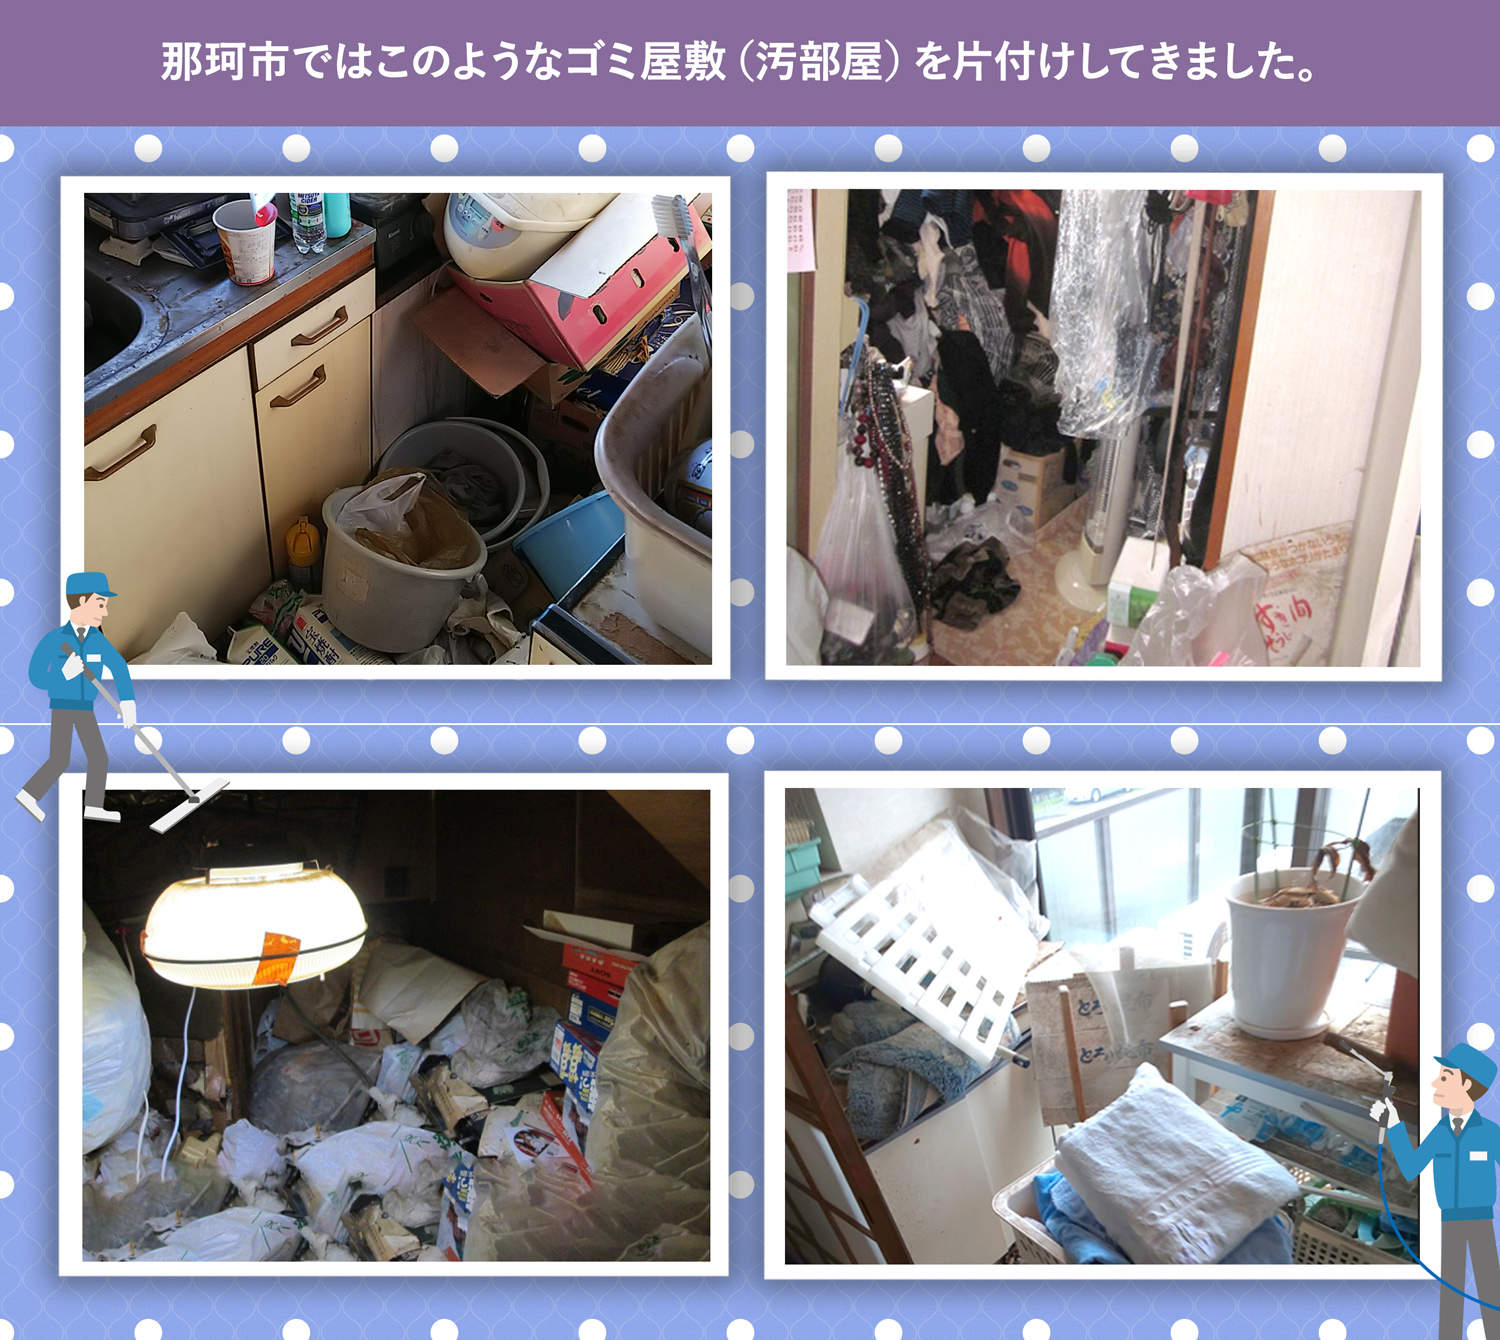 那珂市で行ったで行ったごみ屋敷・汚部屋の片付けの一例